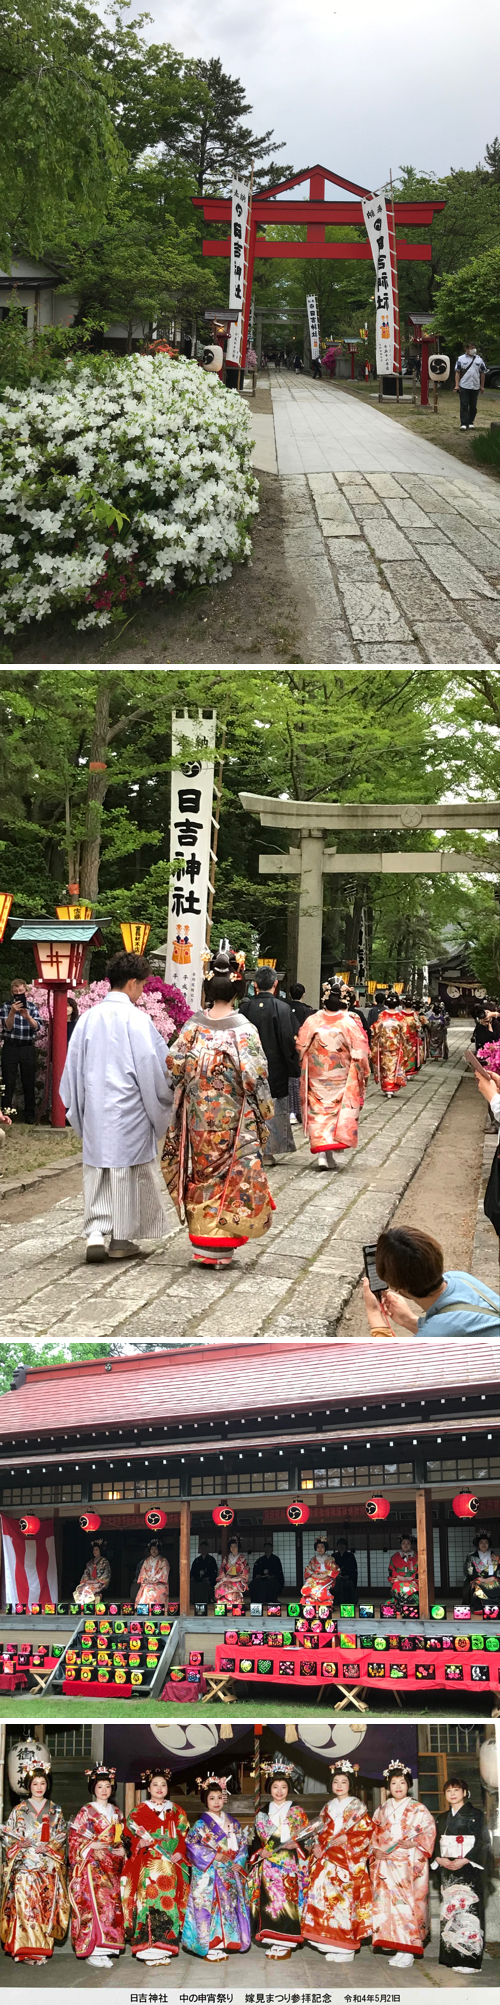 能代市日吉神社「嫁見まつり」